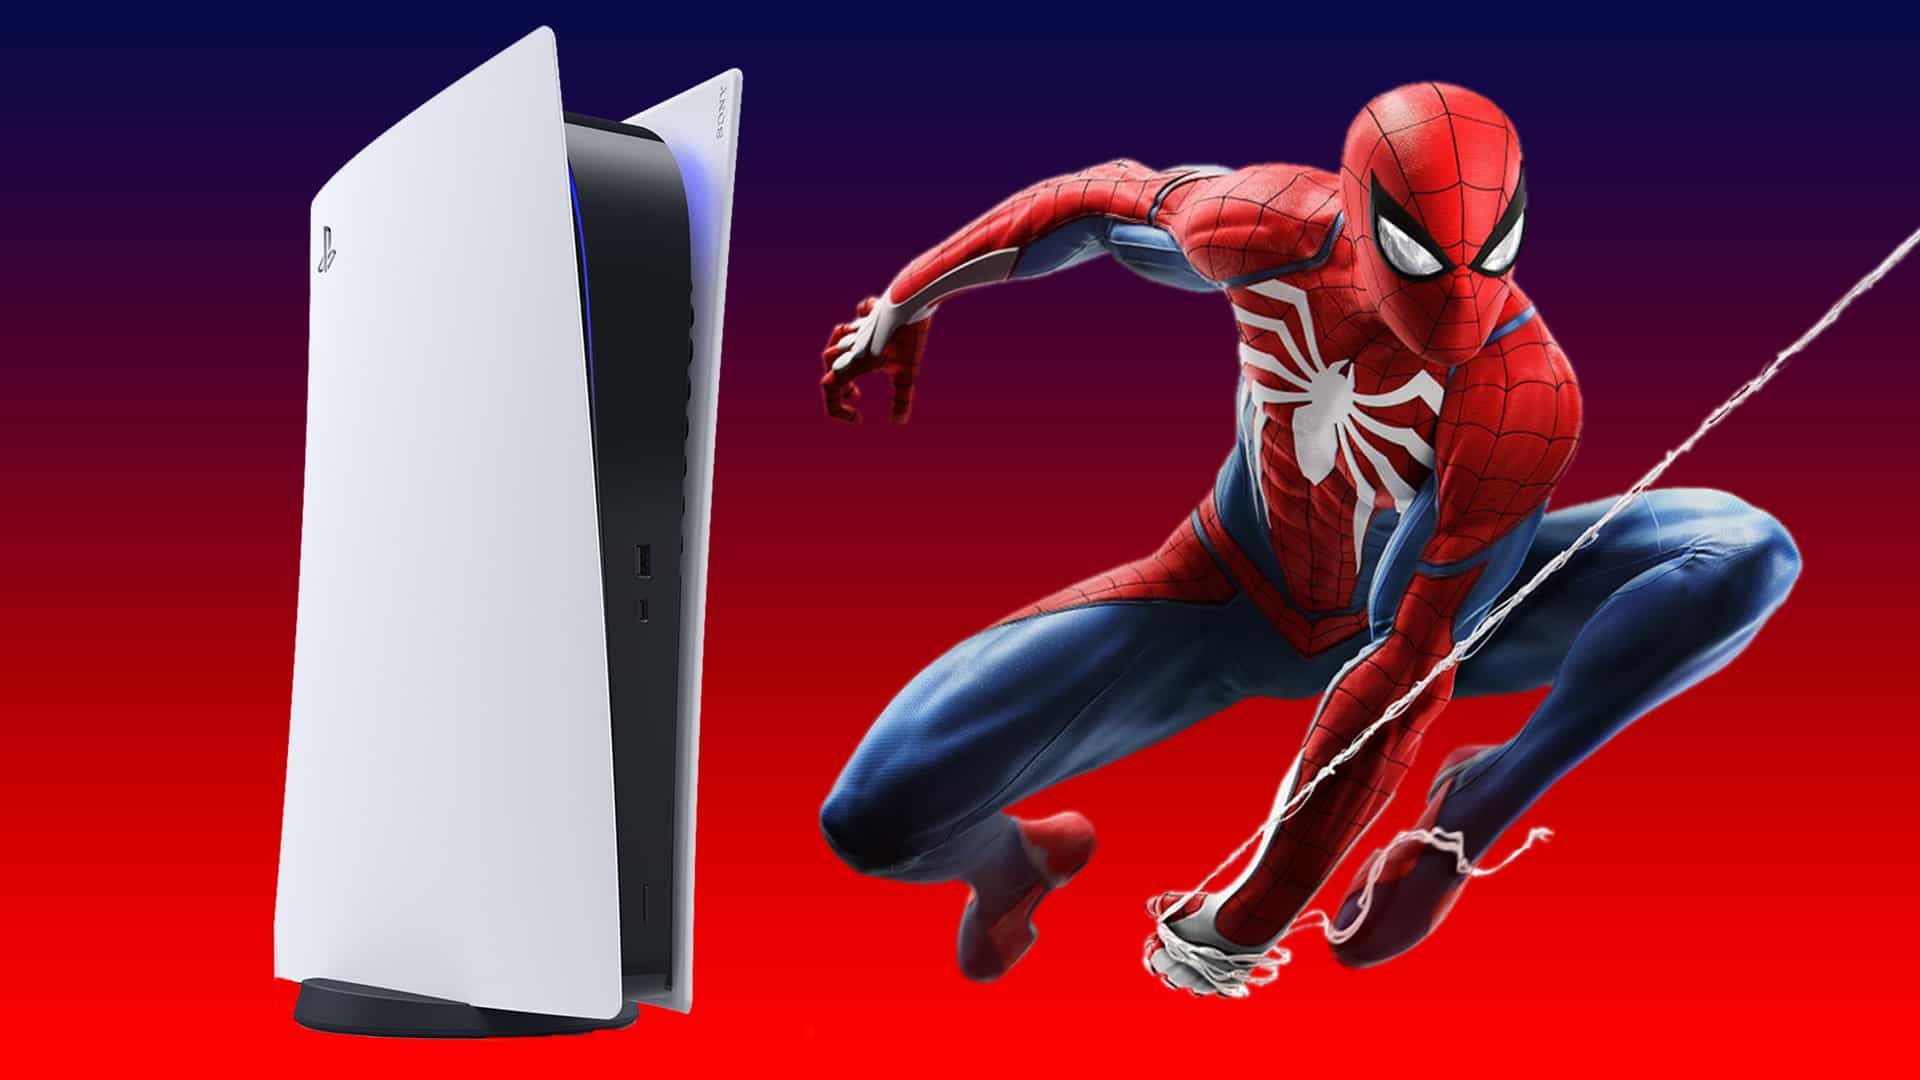 La PS5 de Sony recibe un cambio de imagen épico personalizado de Spider-Man